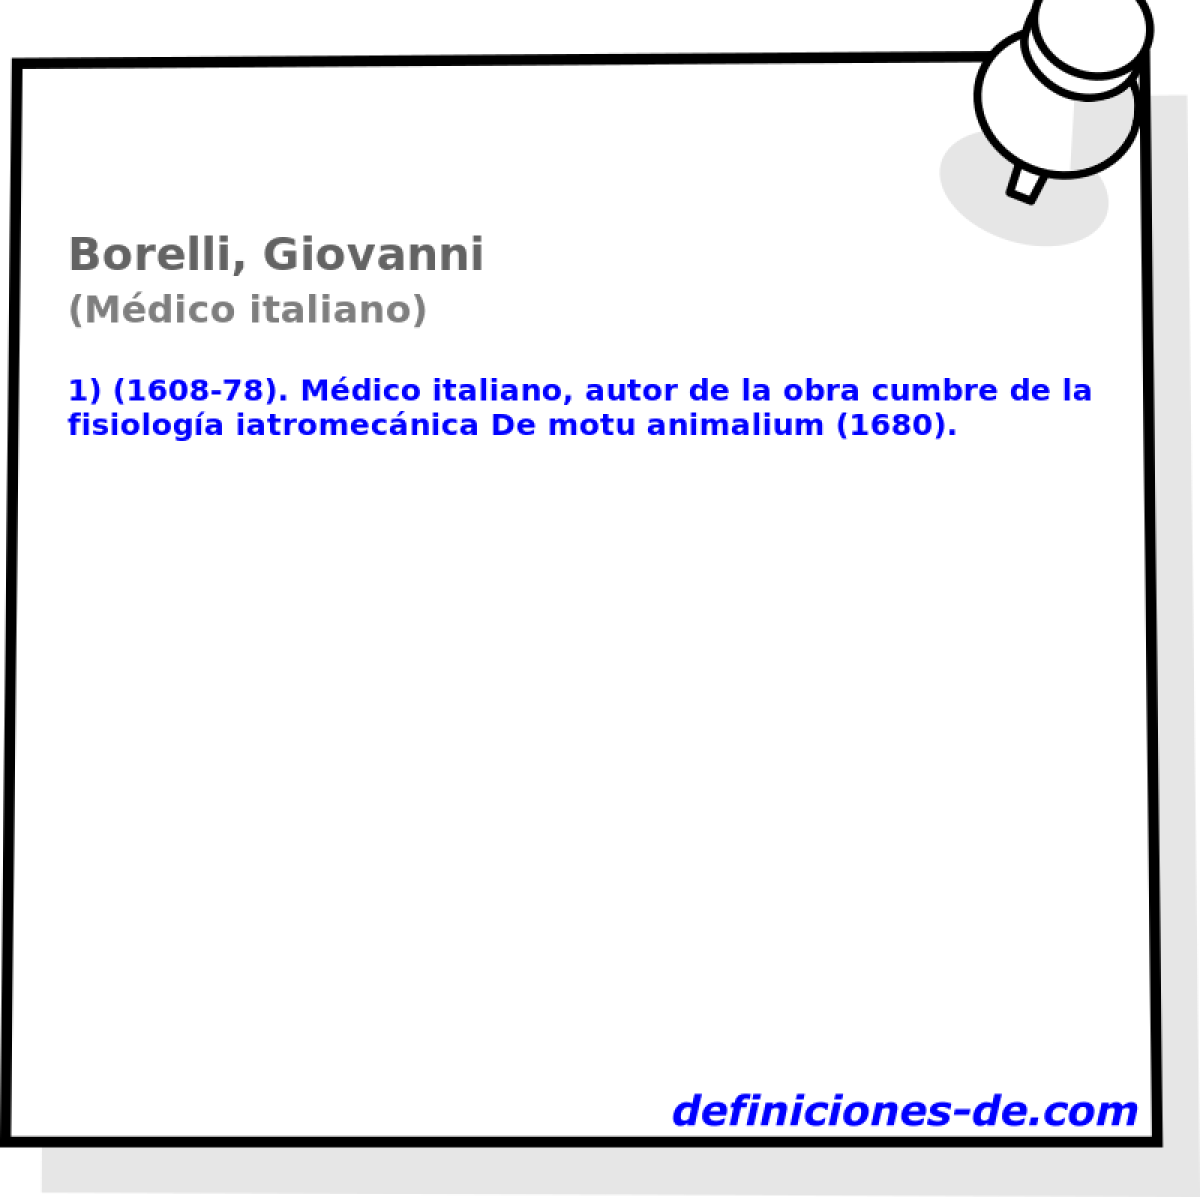 Borelli, Giovanni (Mdico italiano)